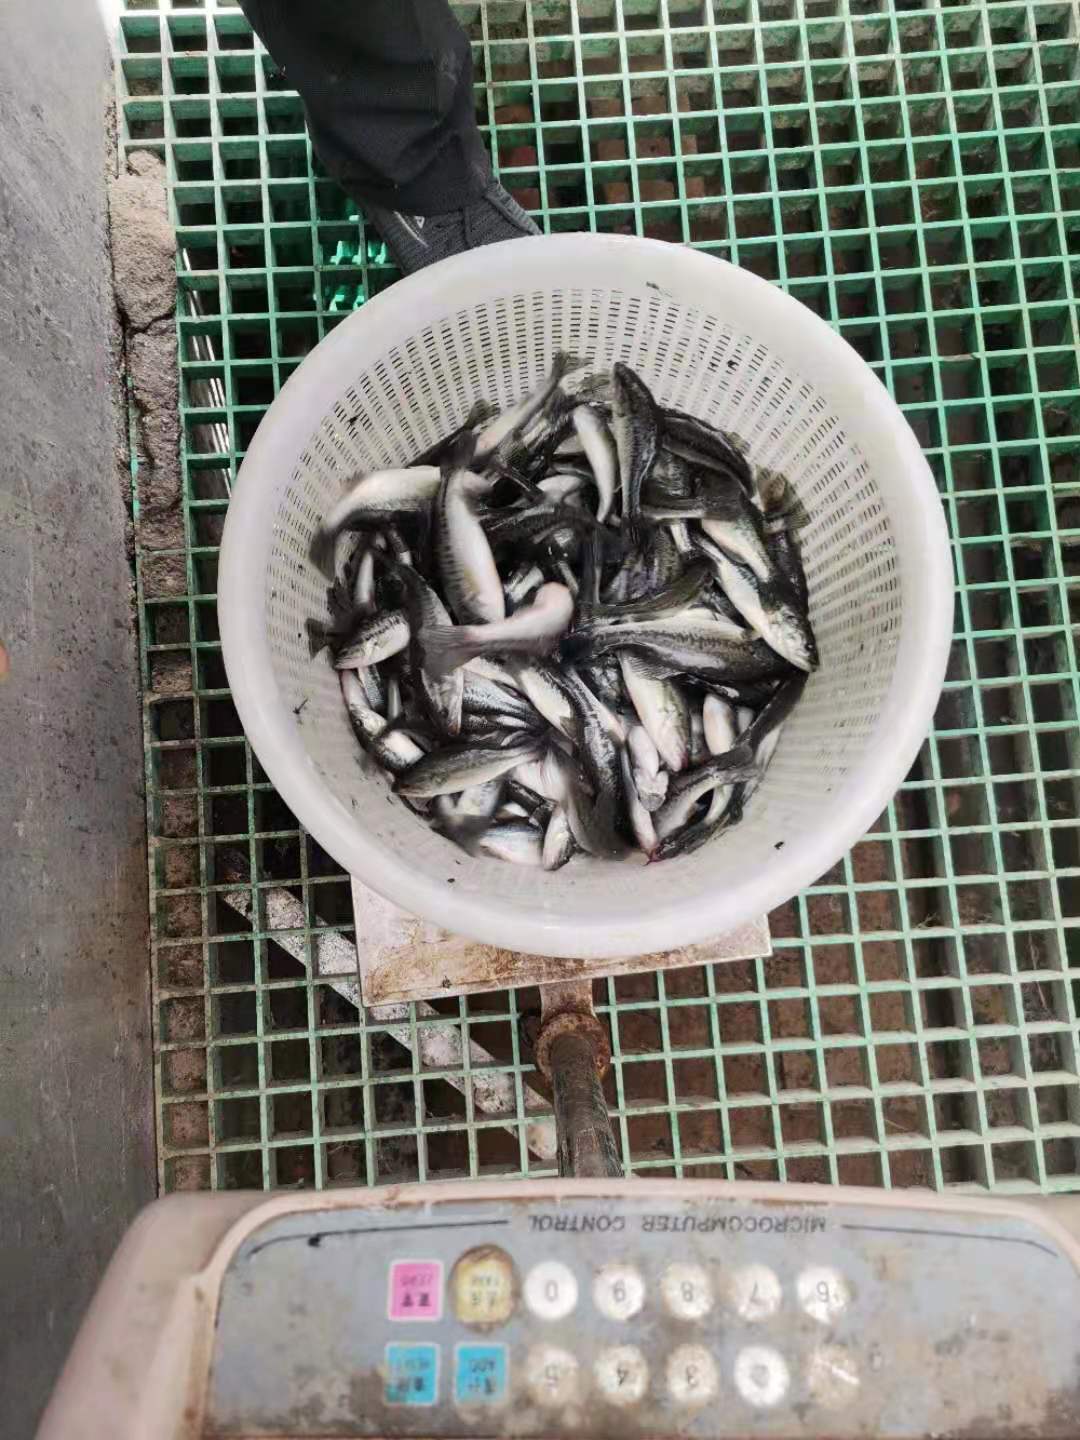 大量出售优质鲈鱼鱼苗 一斤10-50尾 鲜活鱼类 质优价廉1